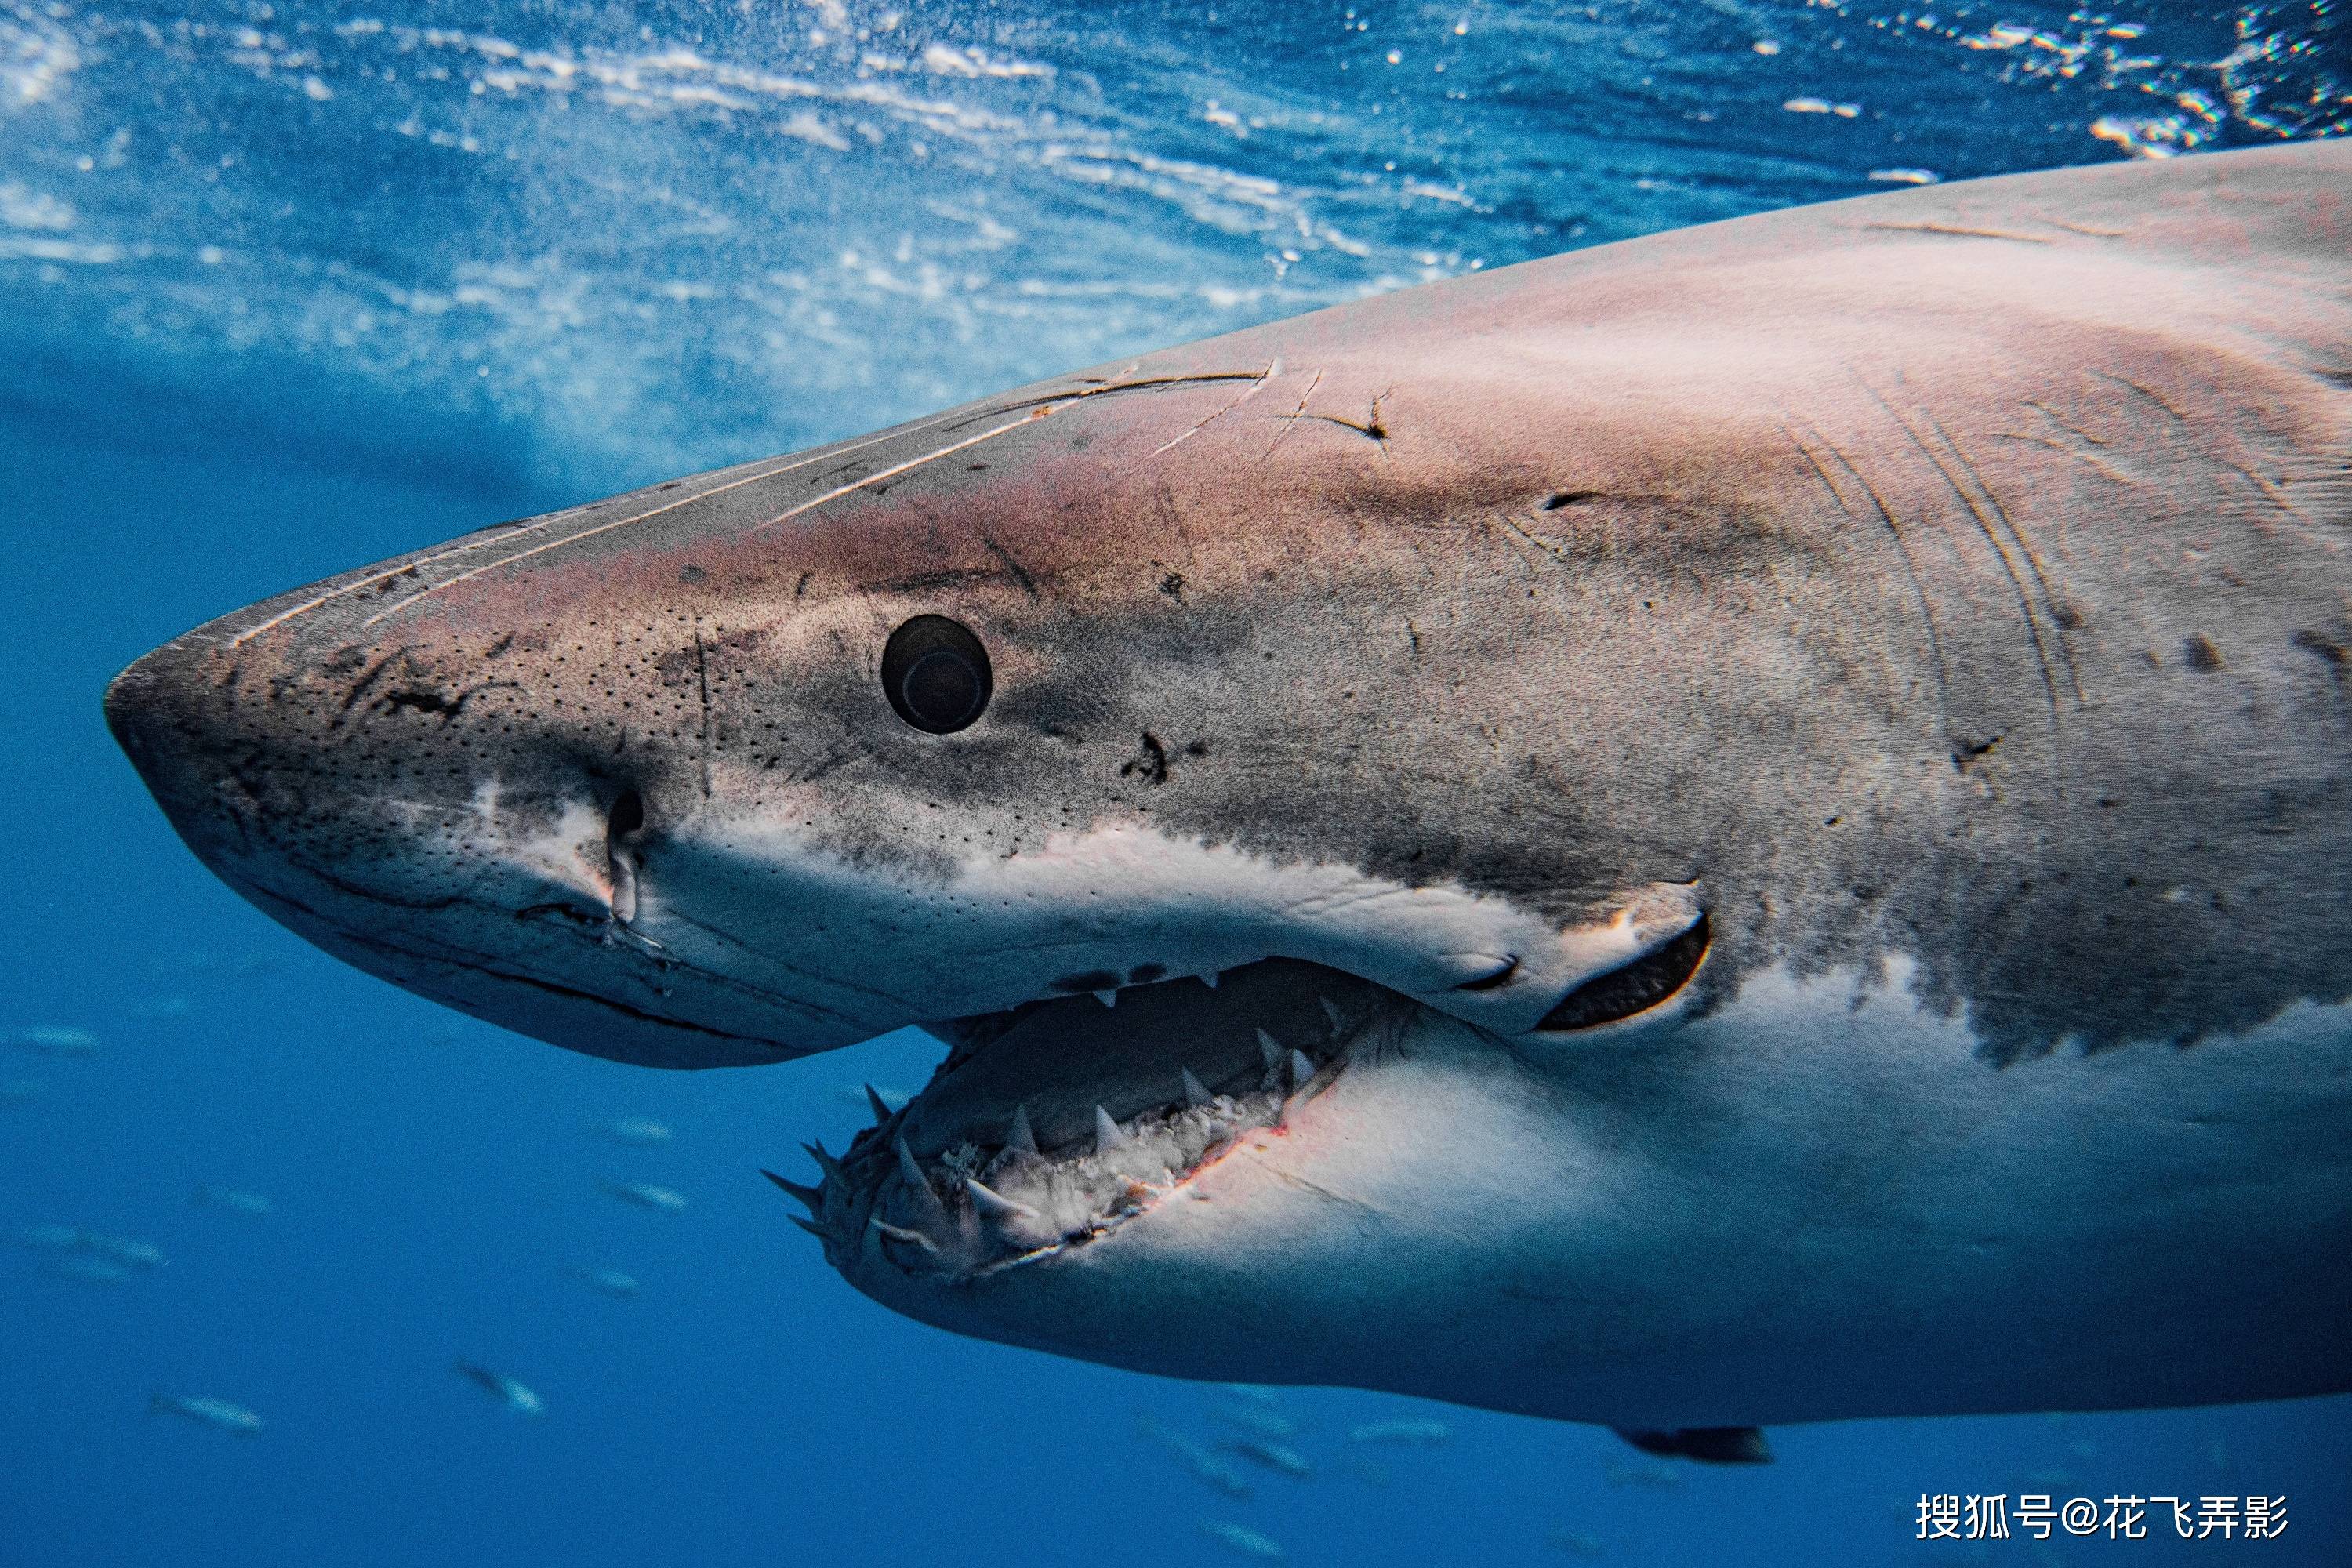 1/5相信大部分人都听过大白鲨的名号,凶狠无比,一张血盆大口让人不寒